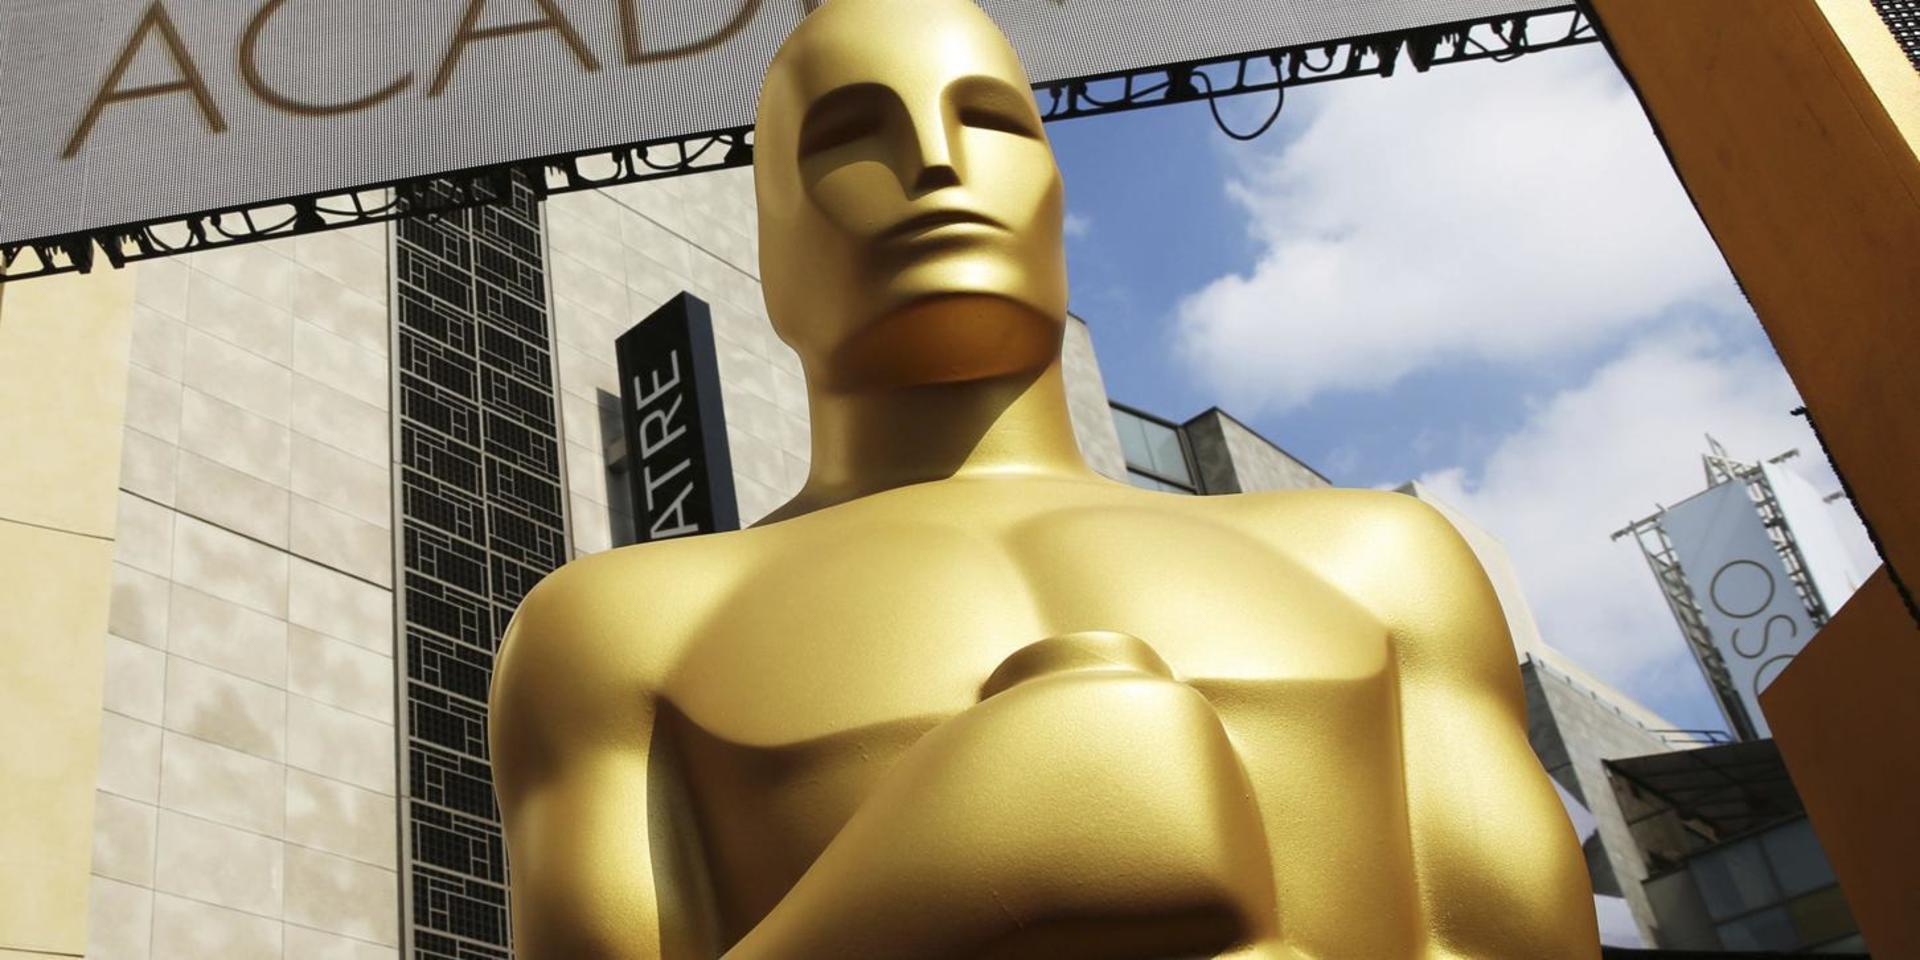 Nomineringarna till Oscarsgalan 2020 presenterades under måndagen, och innehöll många välbekanta namn. 